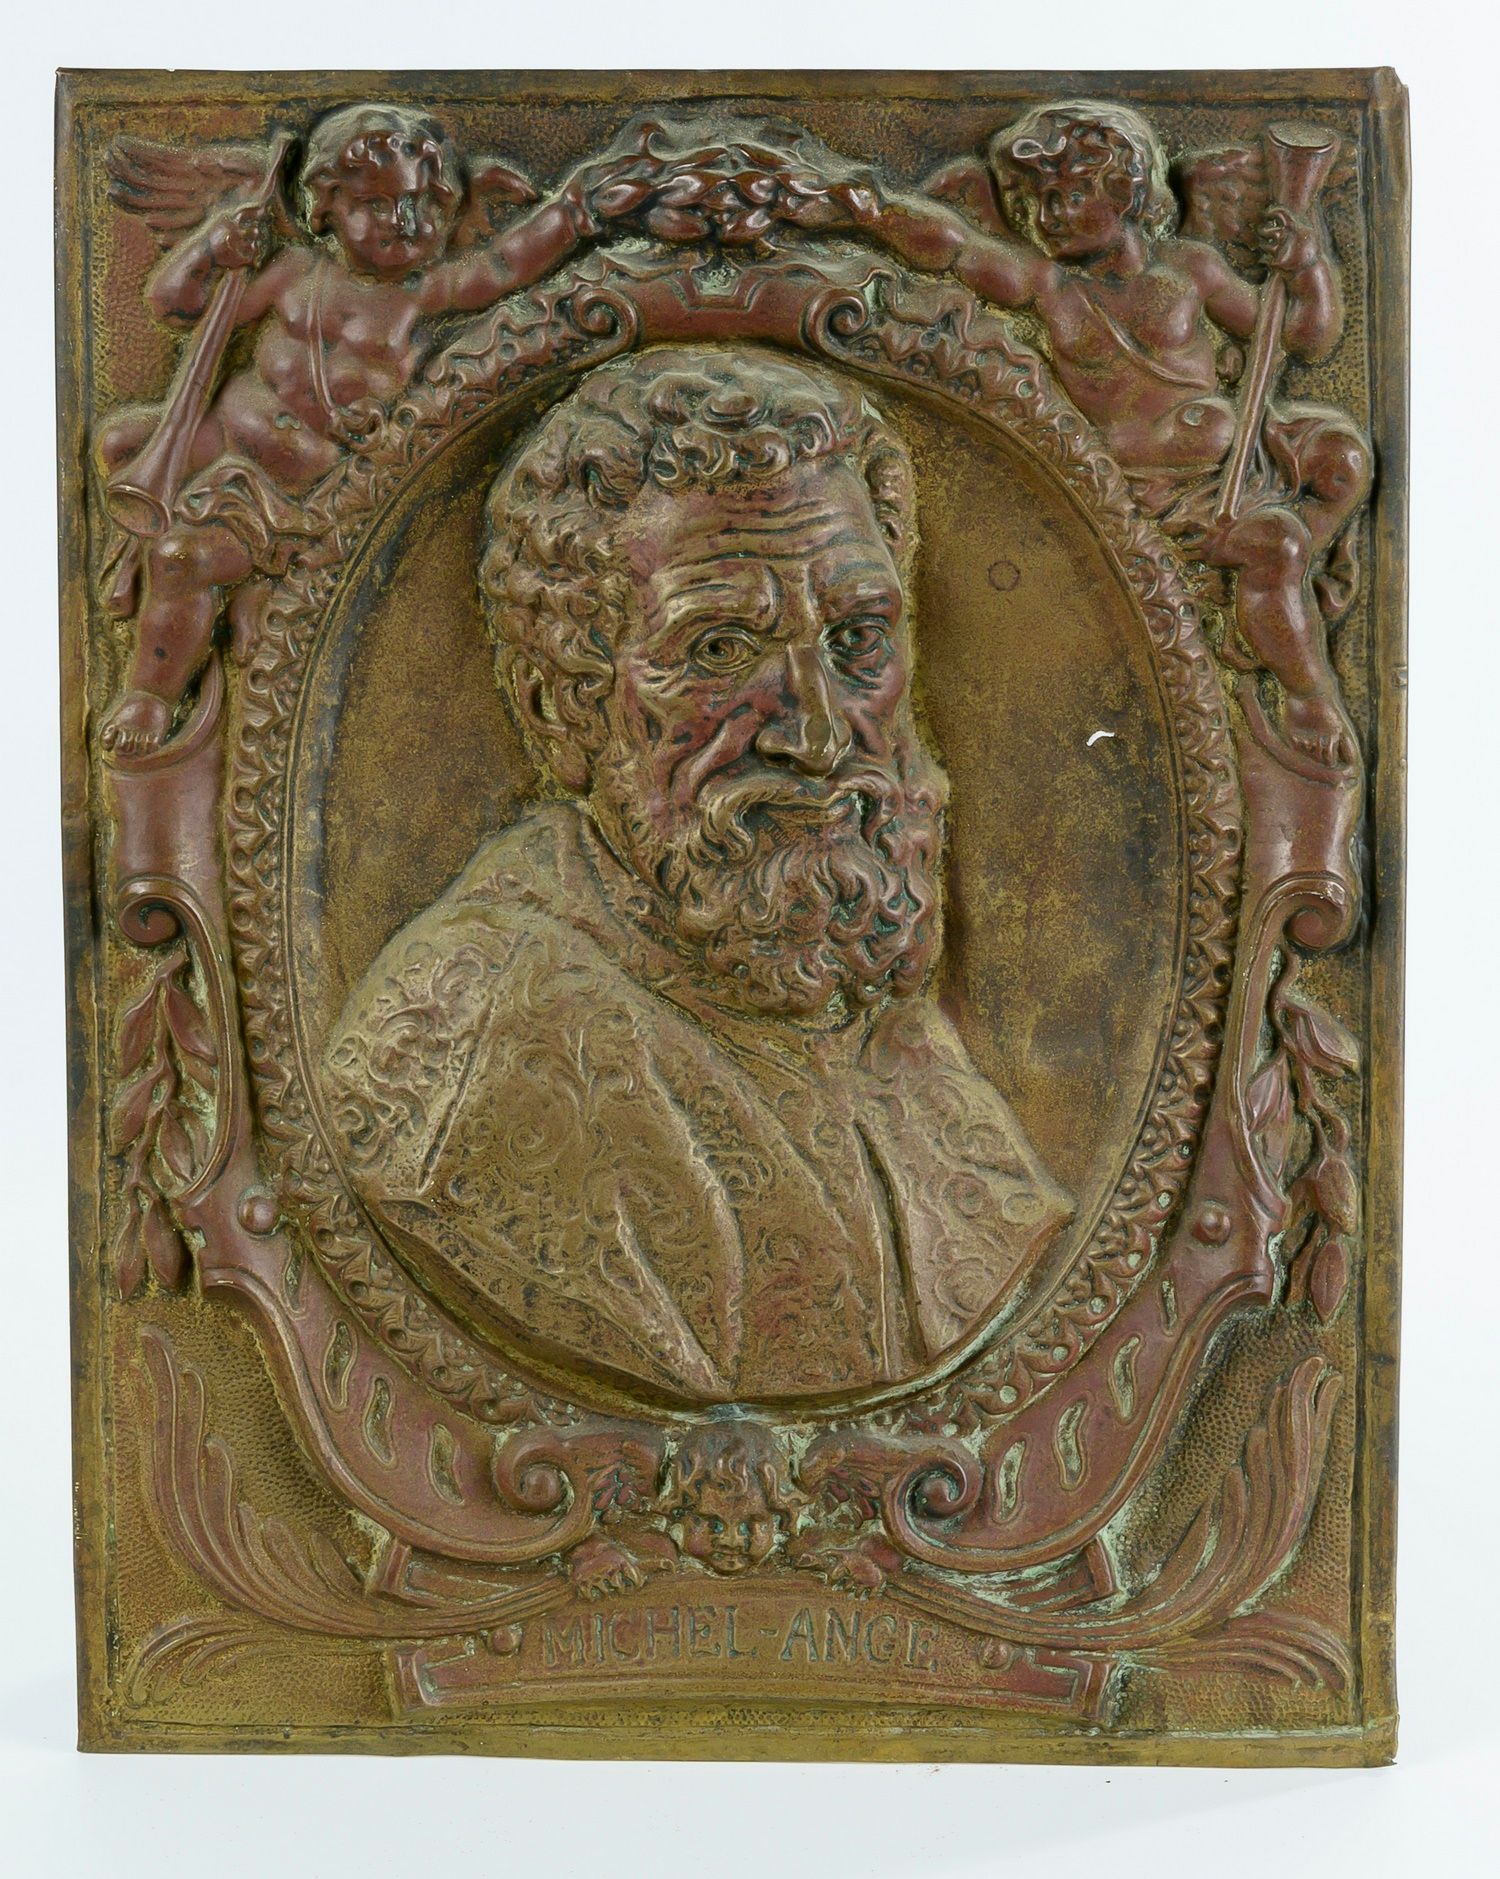 Null Obra del siglo XIX

MICHEL ANGE

Medallón en el busto, representado triunfa&hellip;